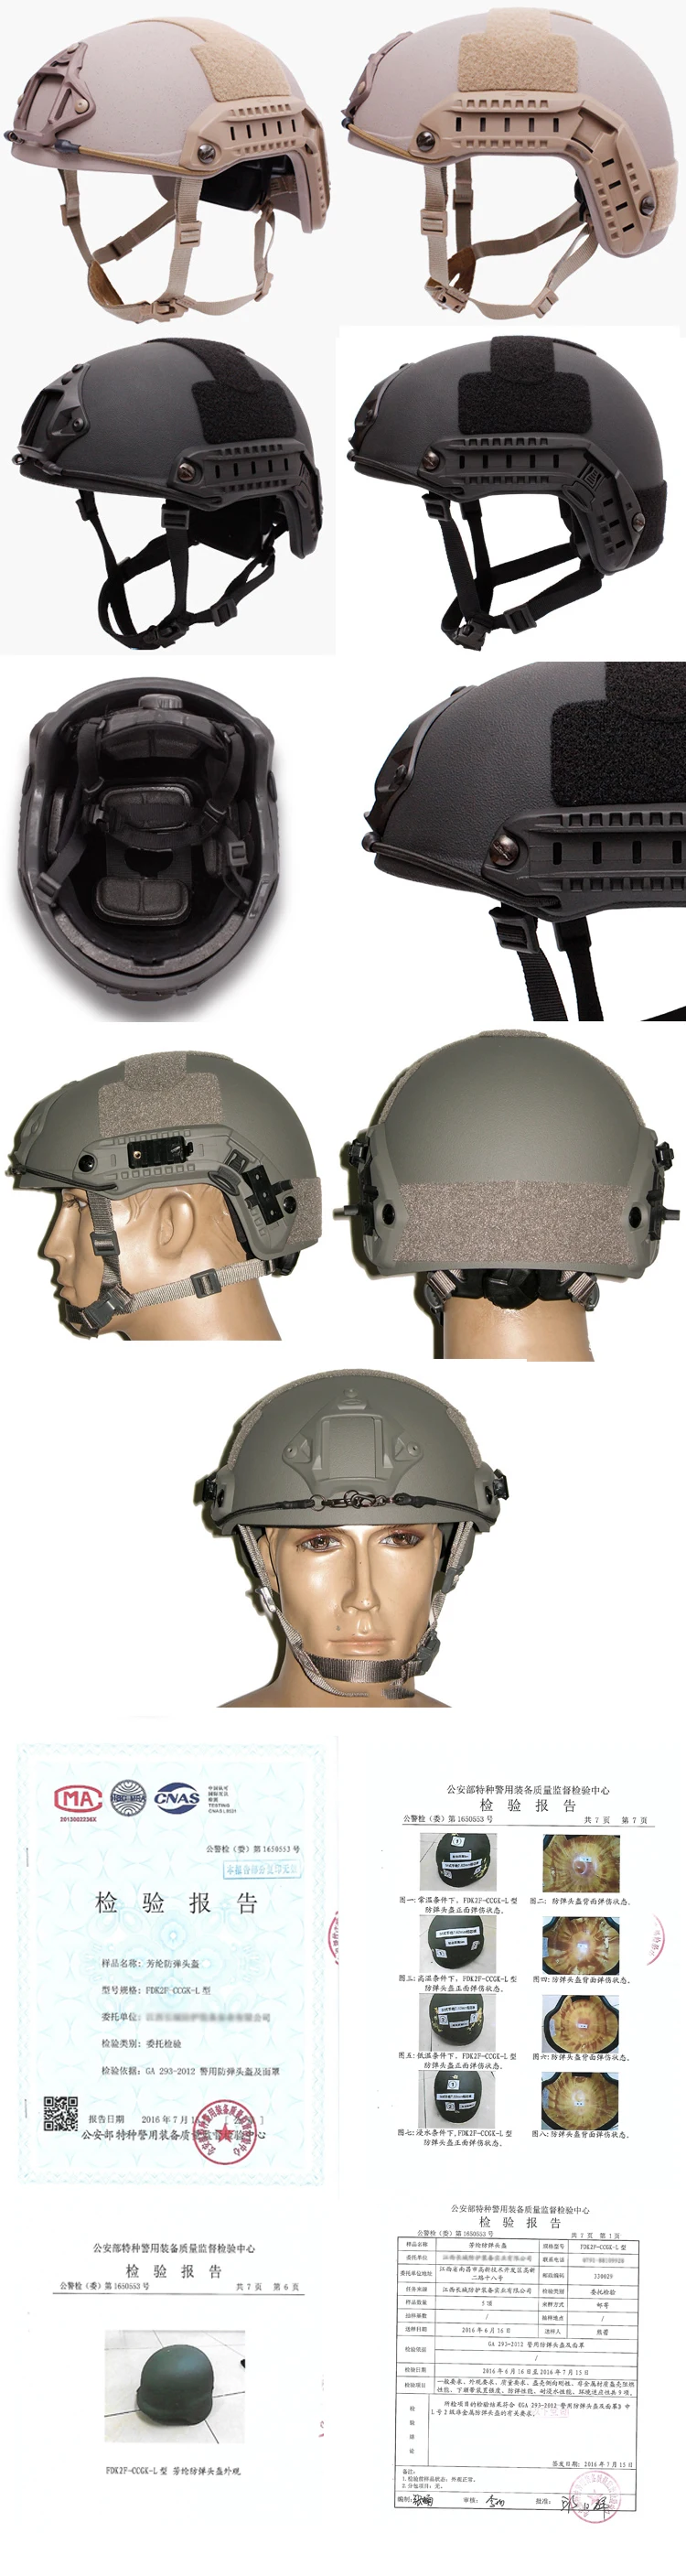 Быстрый пуленепробиваемый шлем+ жилет+ доспехи полиции для самообороны, броня, военная тактика, спецназ, солдат, защитное снаряжение, gilet pare balle